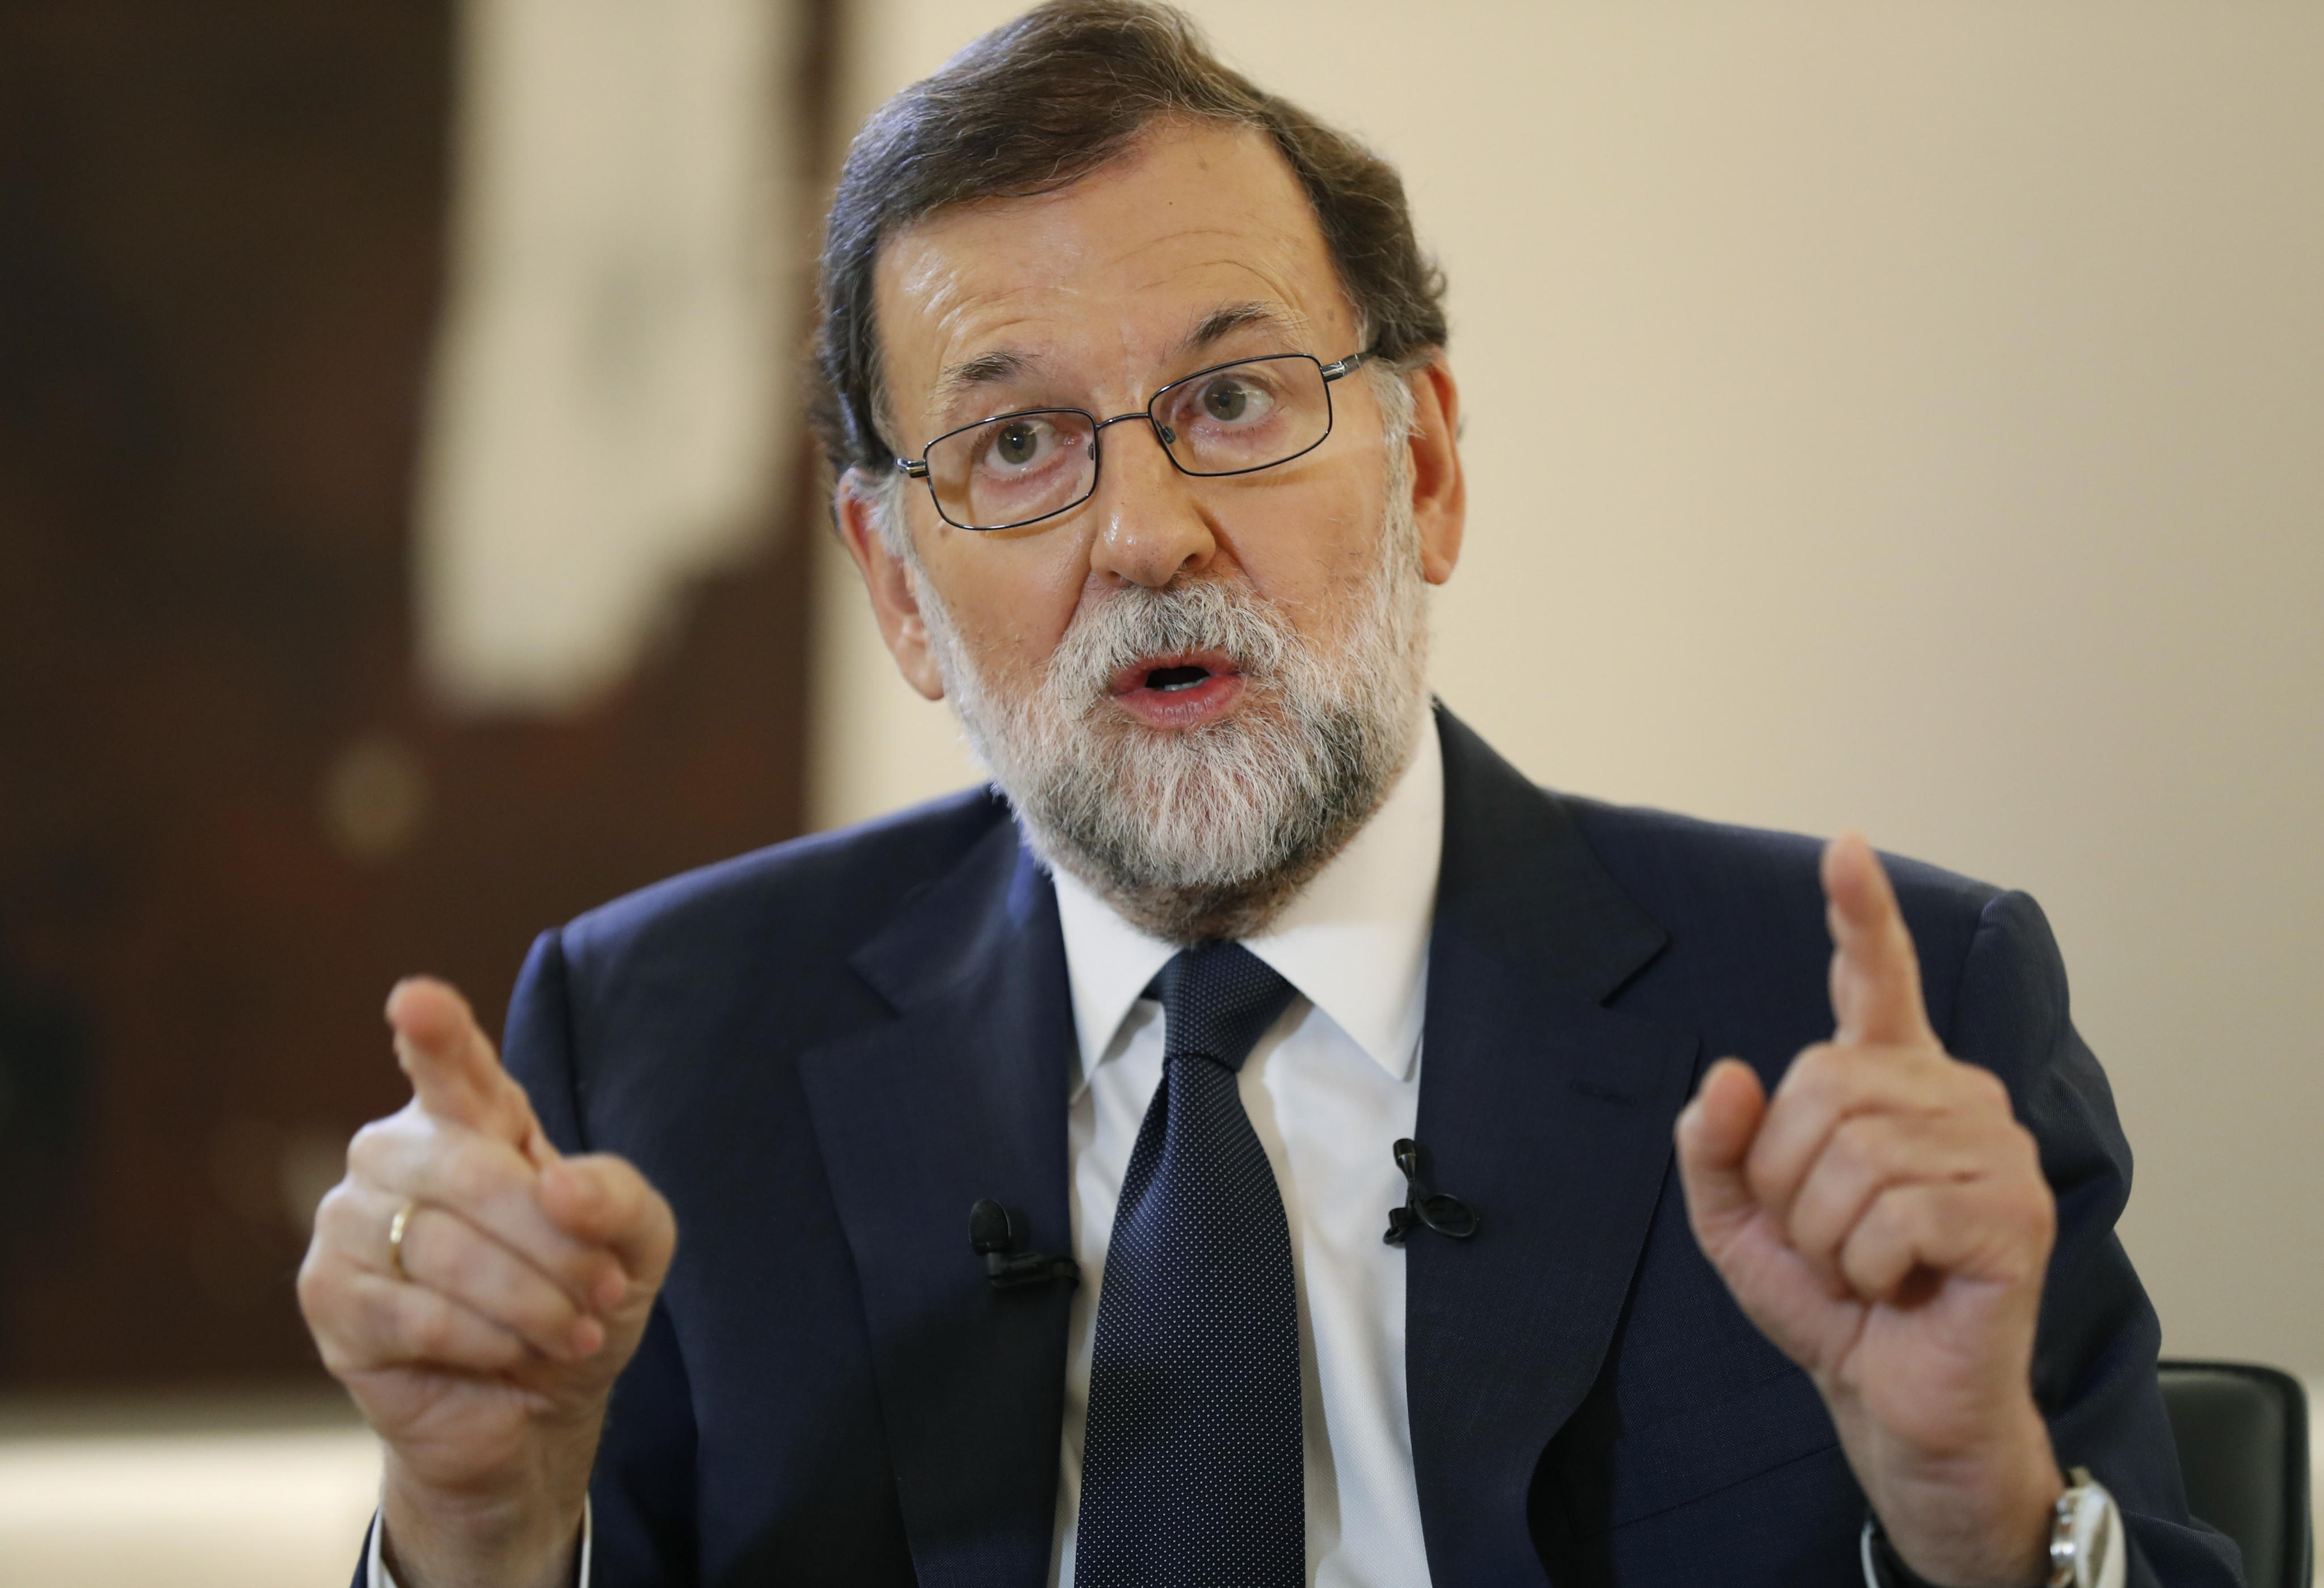 "No vamos a permitir la independencia de Cataluña", asegura Mariano Rajoy